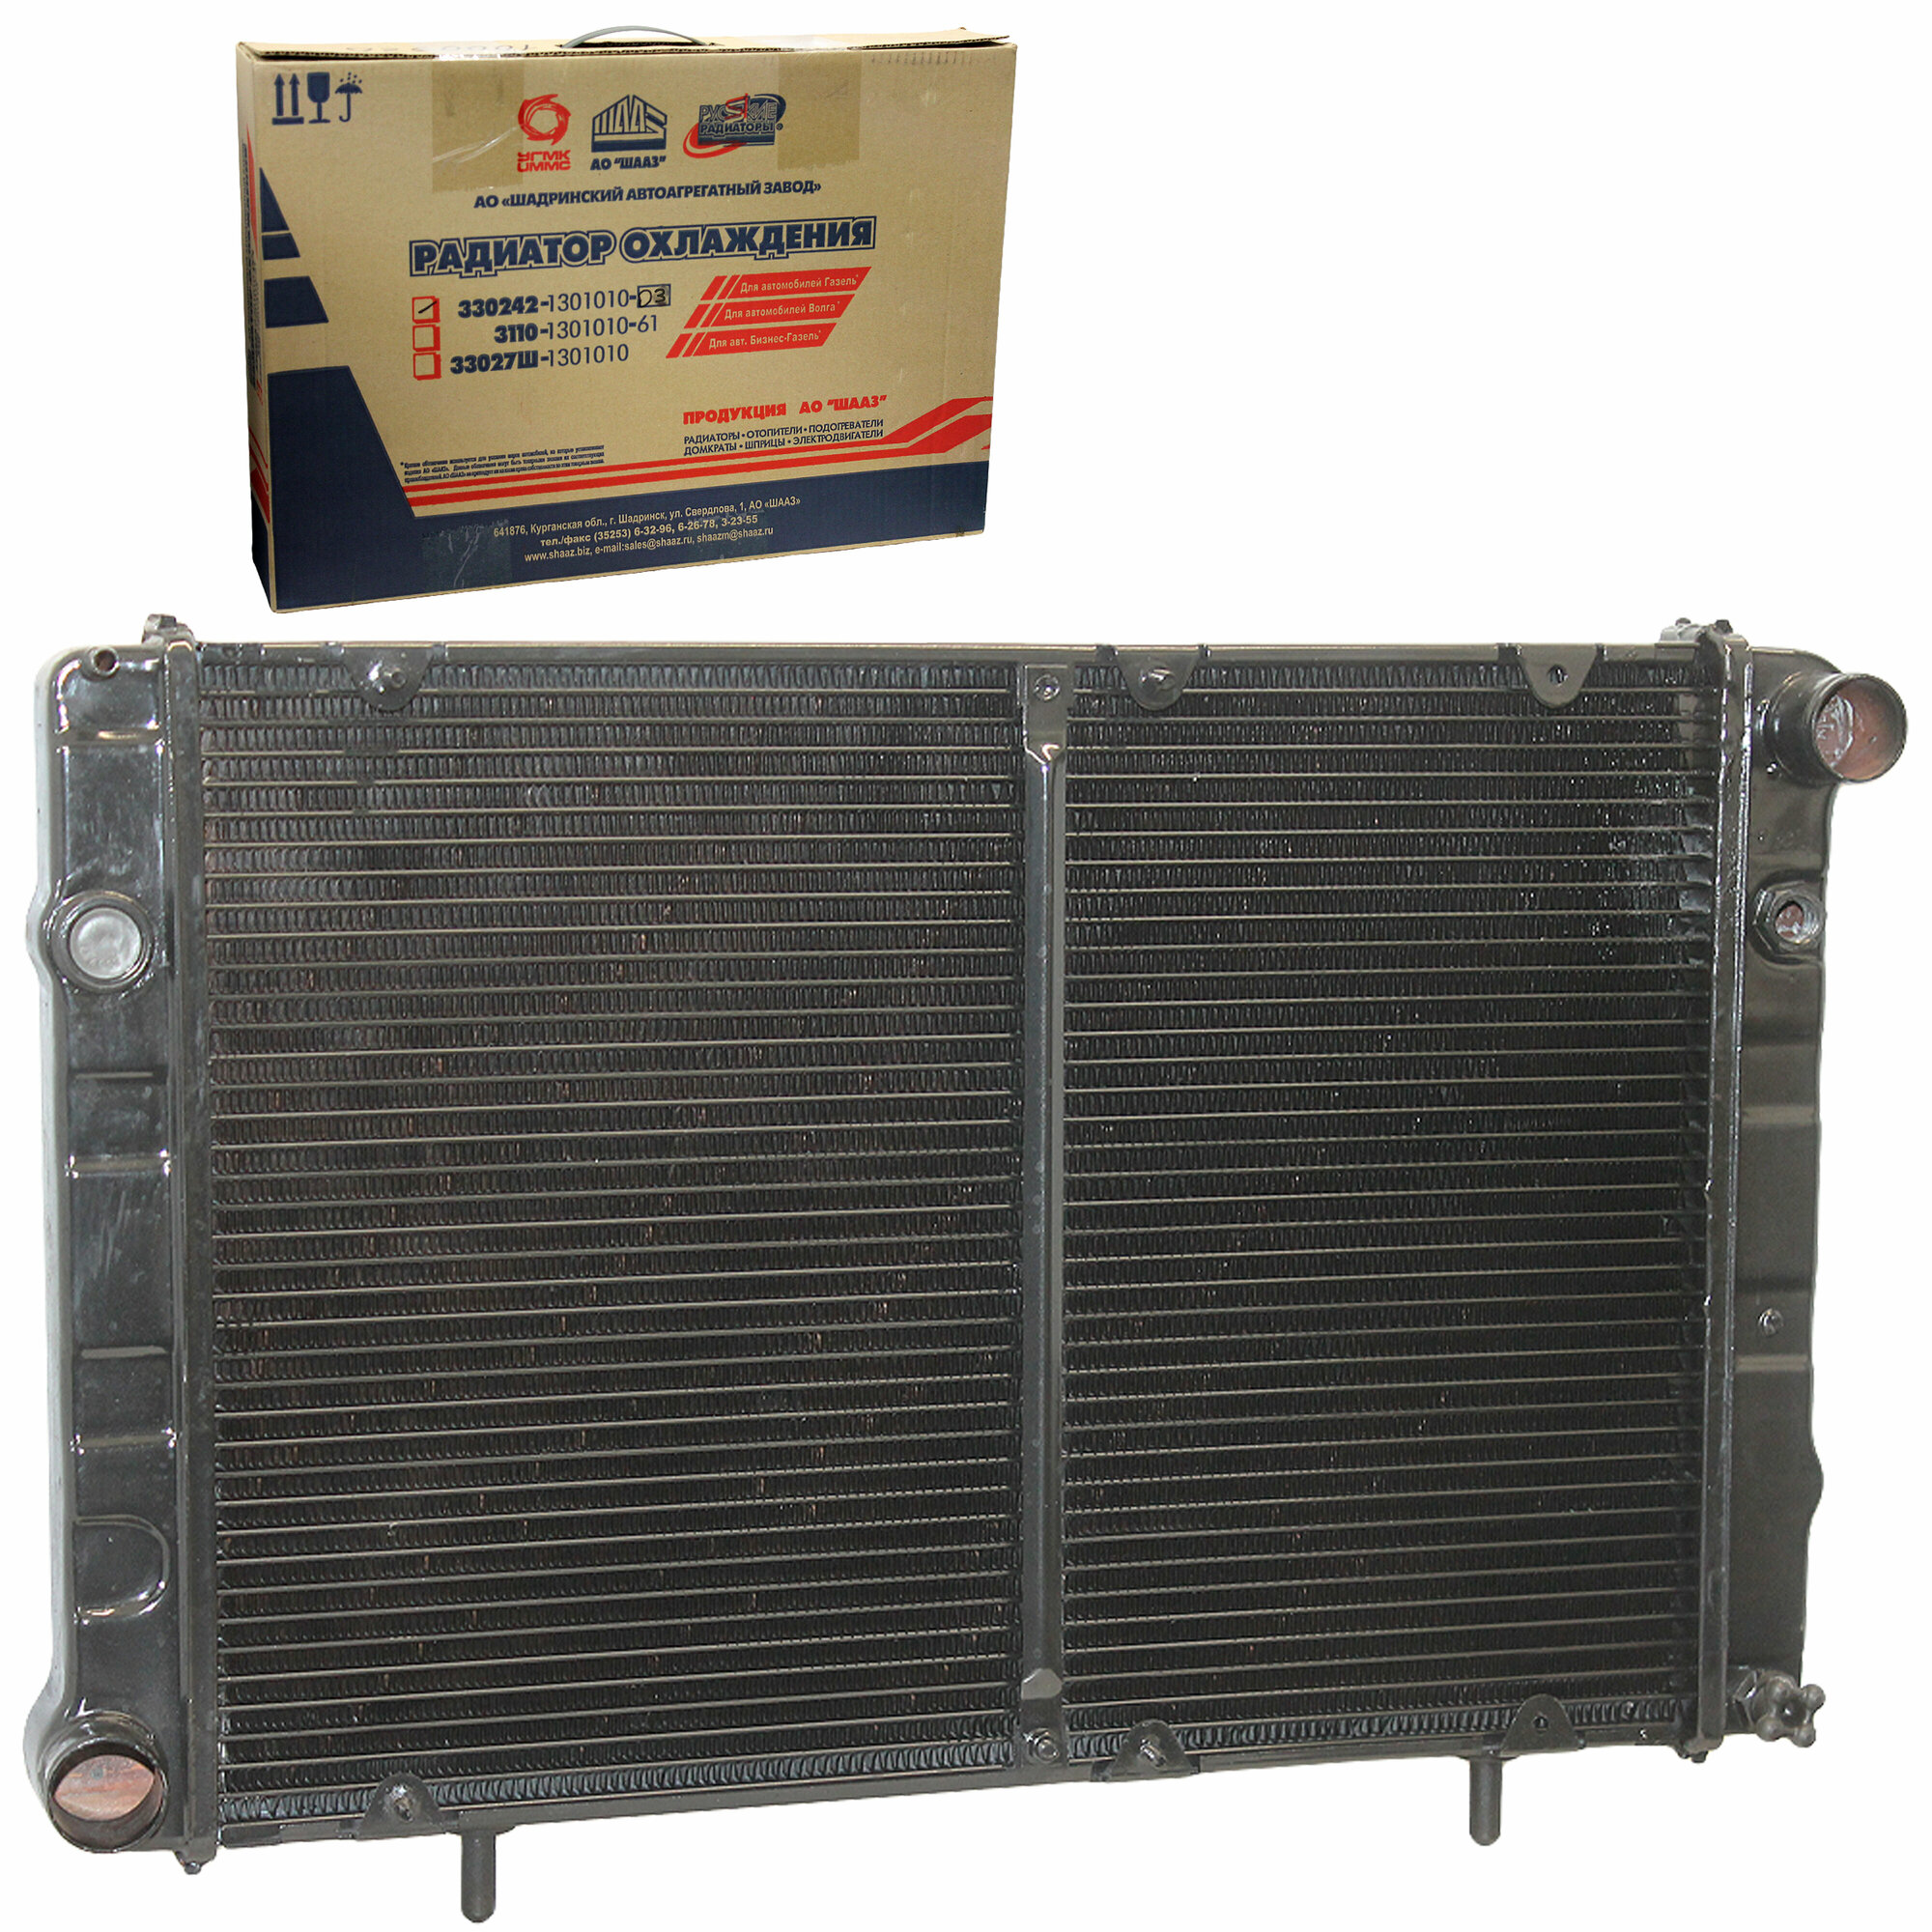 Радиатор охлаждения 2-рядный для Г-2217 дв. ЗМЗ-40522, УМЗ-4216